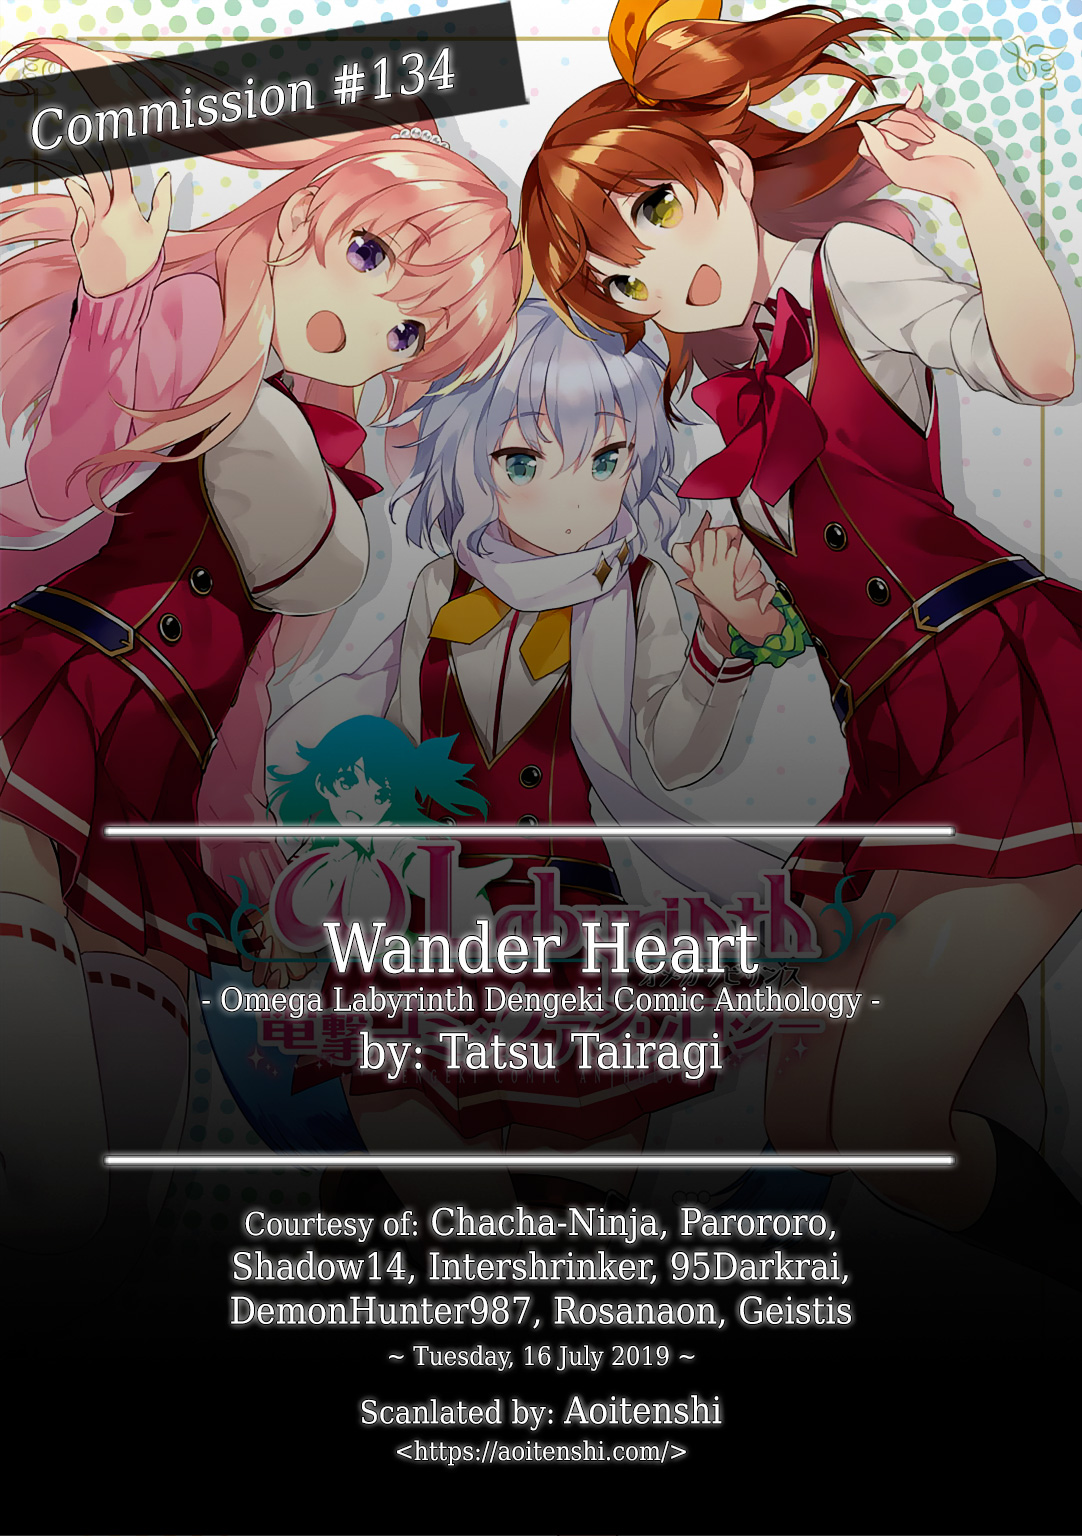 ω Labyrinth Dengeki Comic Anthology Ch. 5 Wander Heart (Tatsu Tairagi)